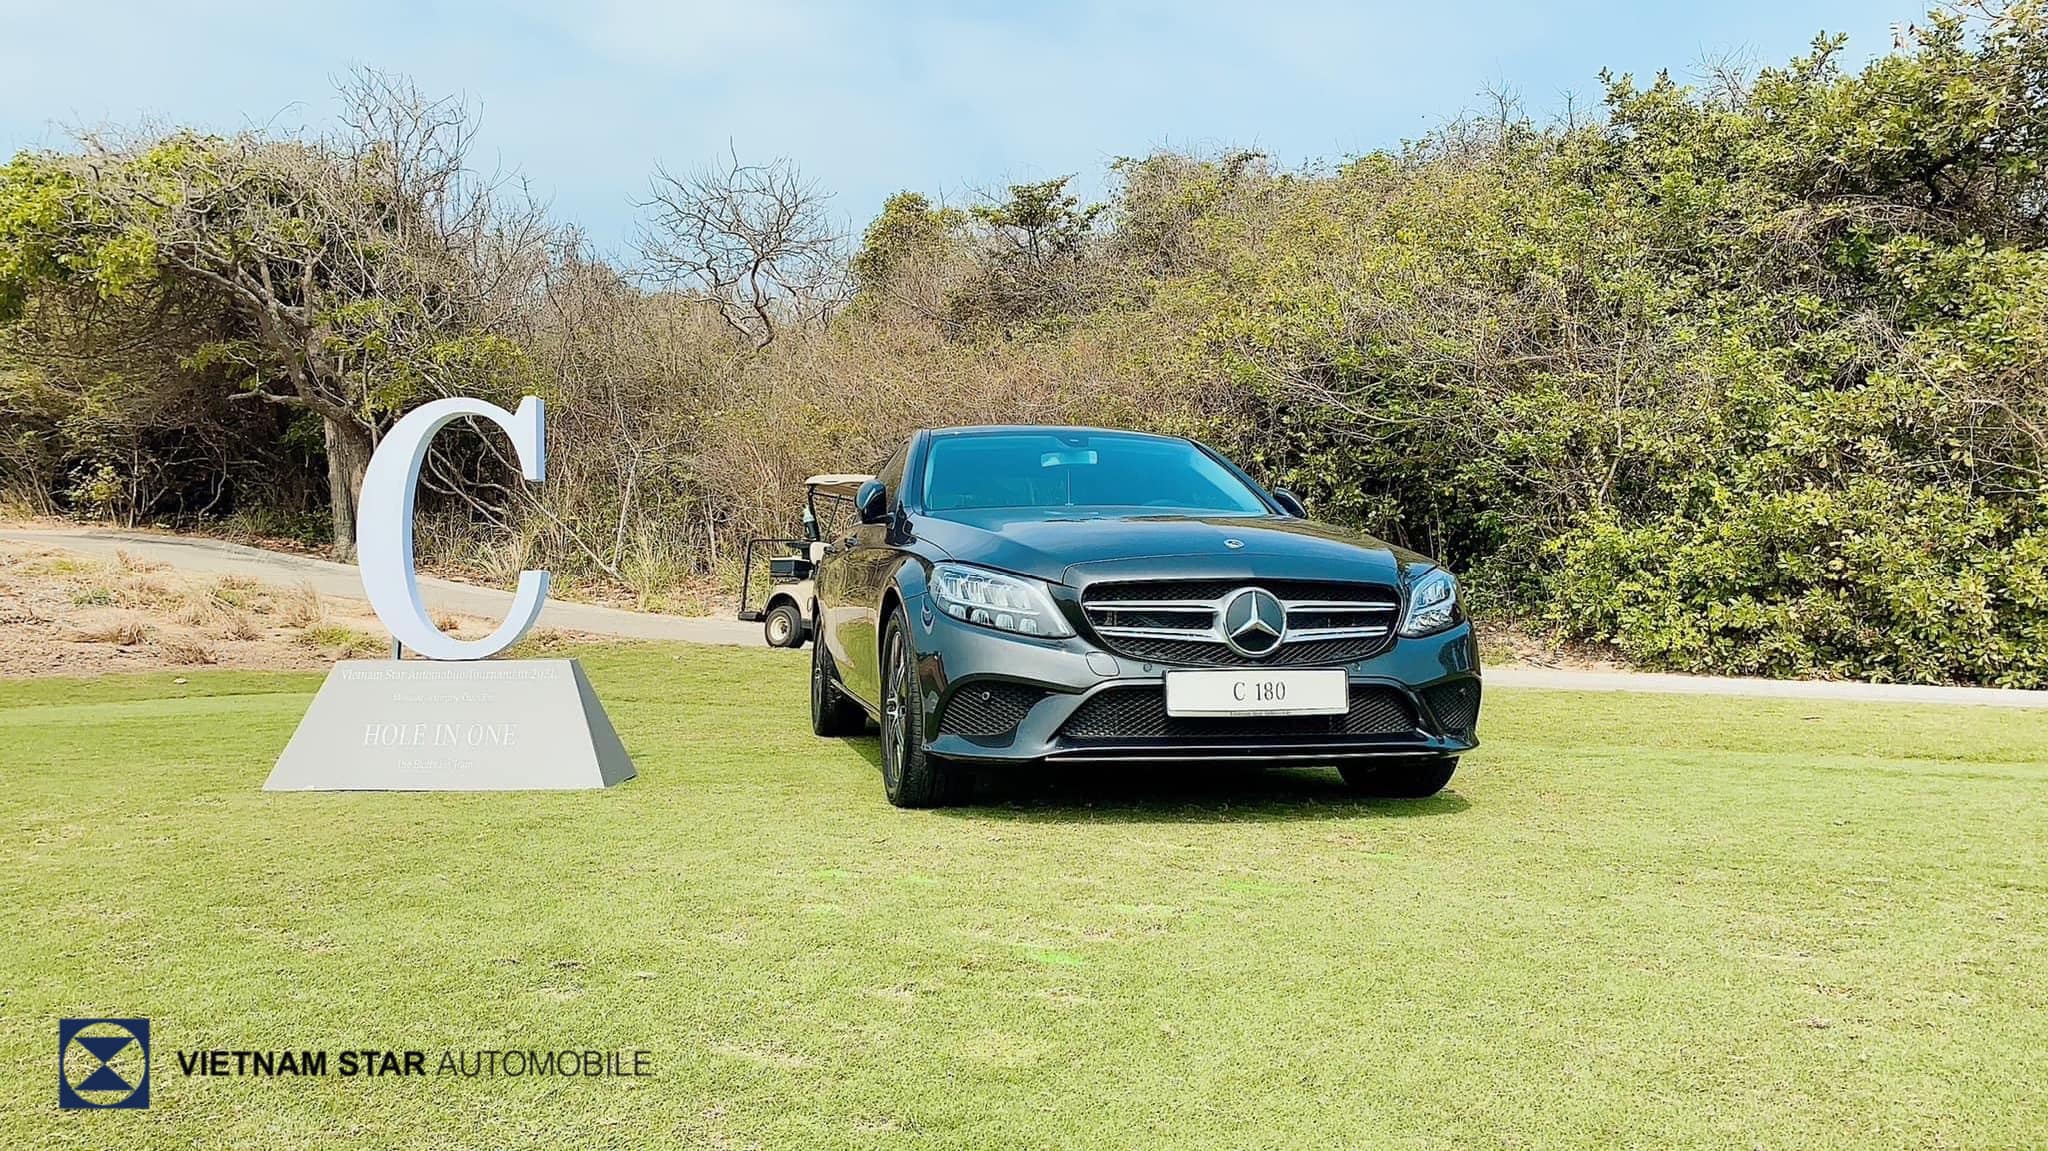 Giải thưởng đắt giá là một chiếc xe Mercedes-Benz dành tặng cho golfer đánh trúng Hole-in-One tại mỗi trận đấu trong suốt mùa giải.